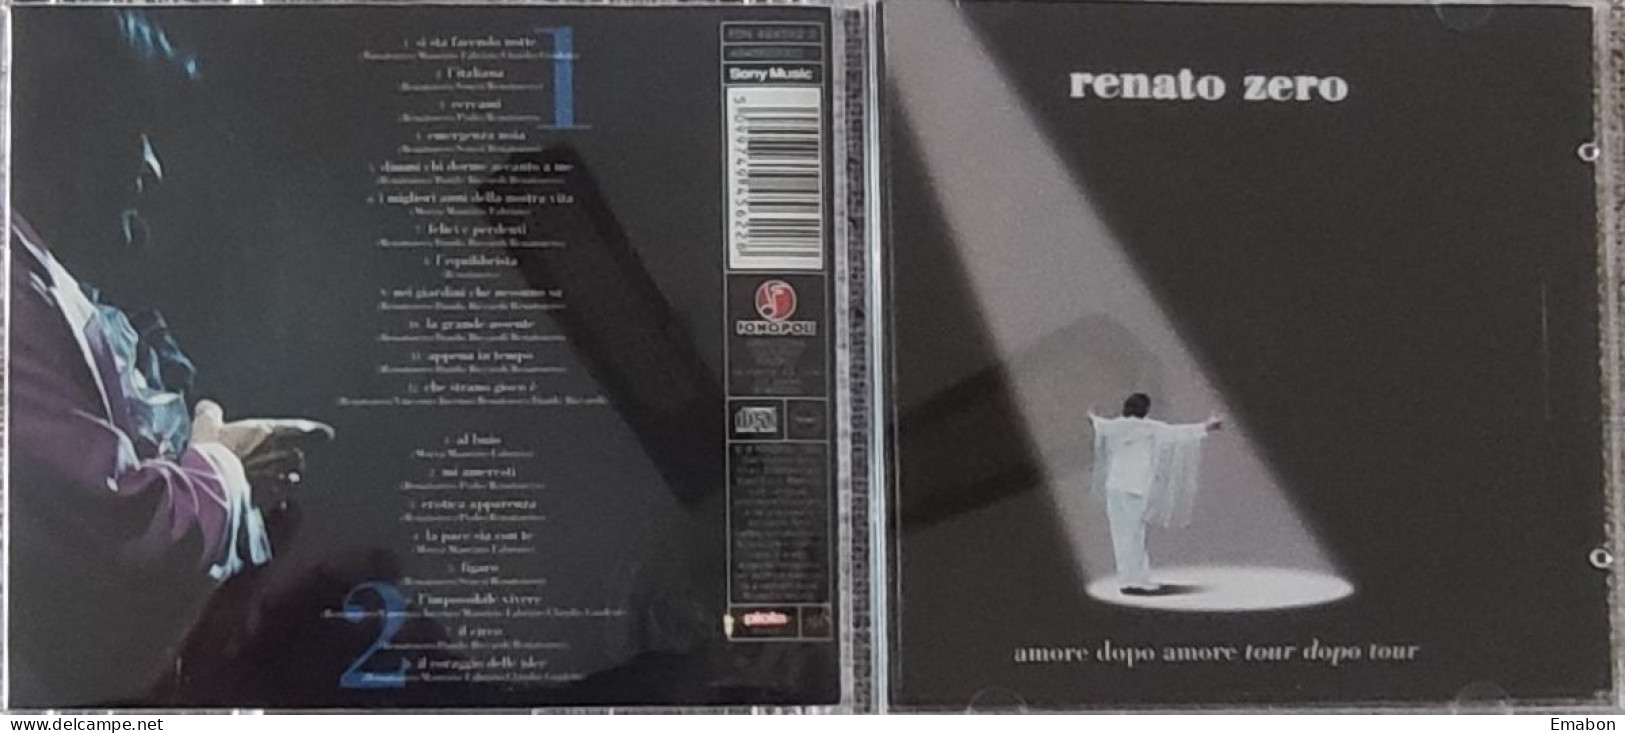 BORGATTA - 2 Cd RENATO ZERO - AMORE DOPO AMORE TOUR DOPO TOUR - FONOPOLI 1999  -  USATO In Buono Stato - Other - Italian Music